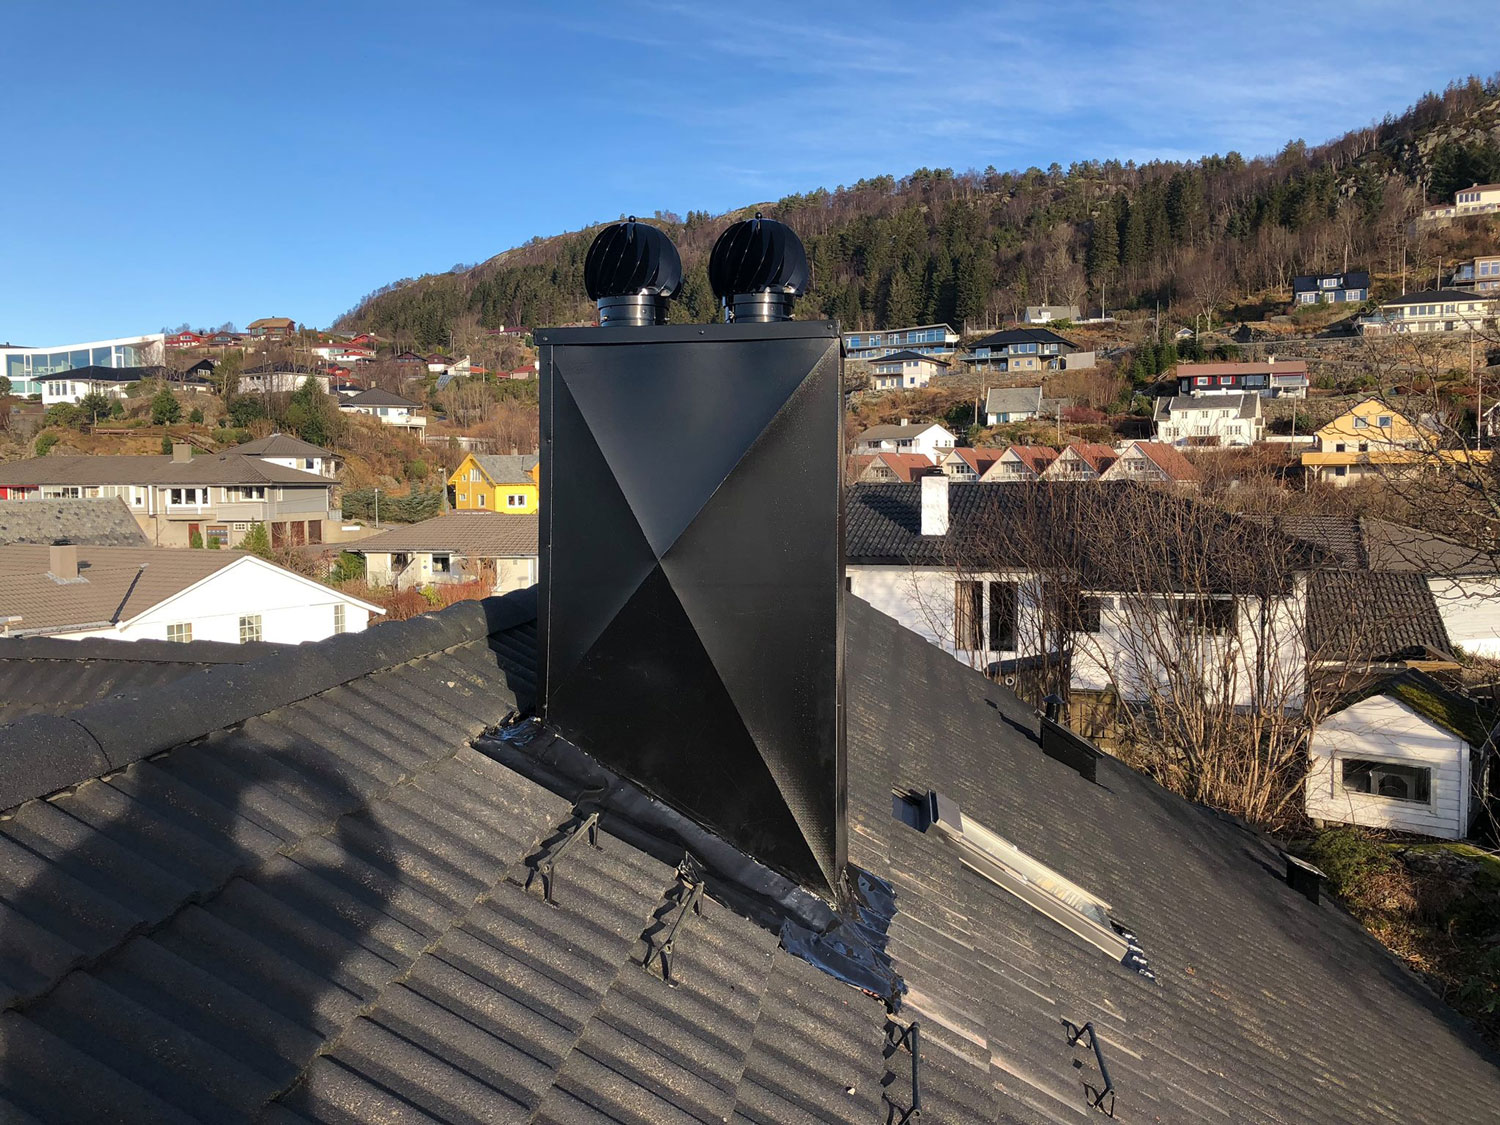 Pipe på tak med utsikt mot bebyggelse - Bergen - Nesttun - Taktekker